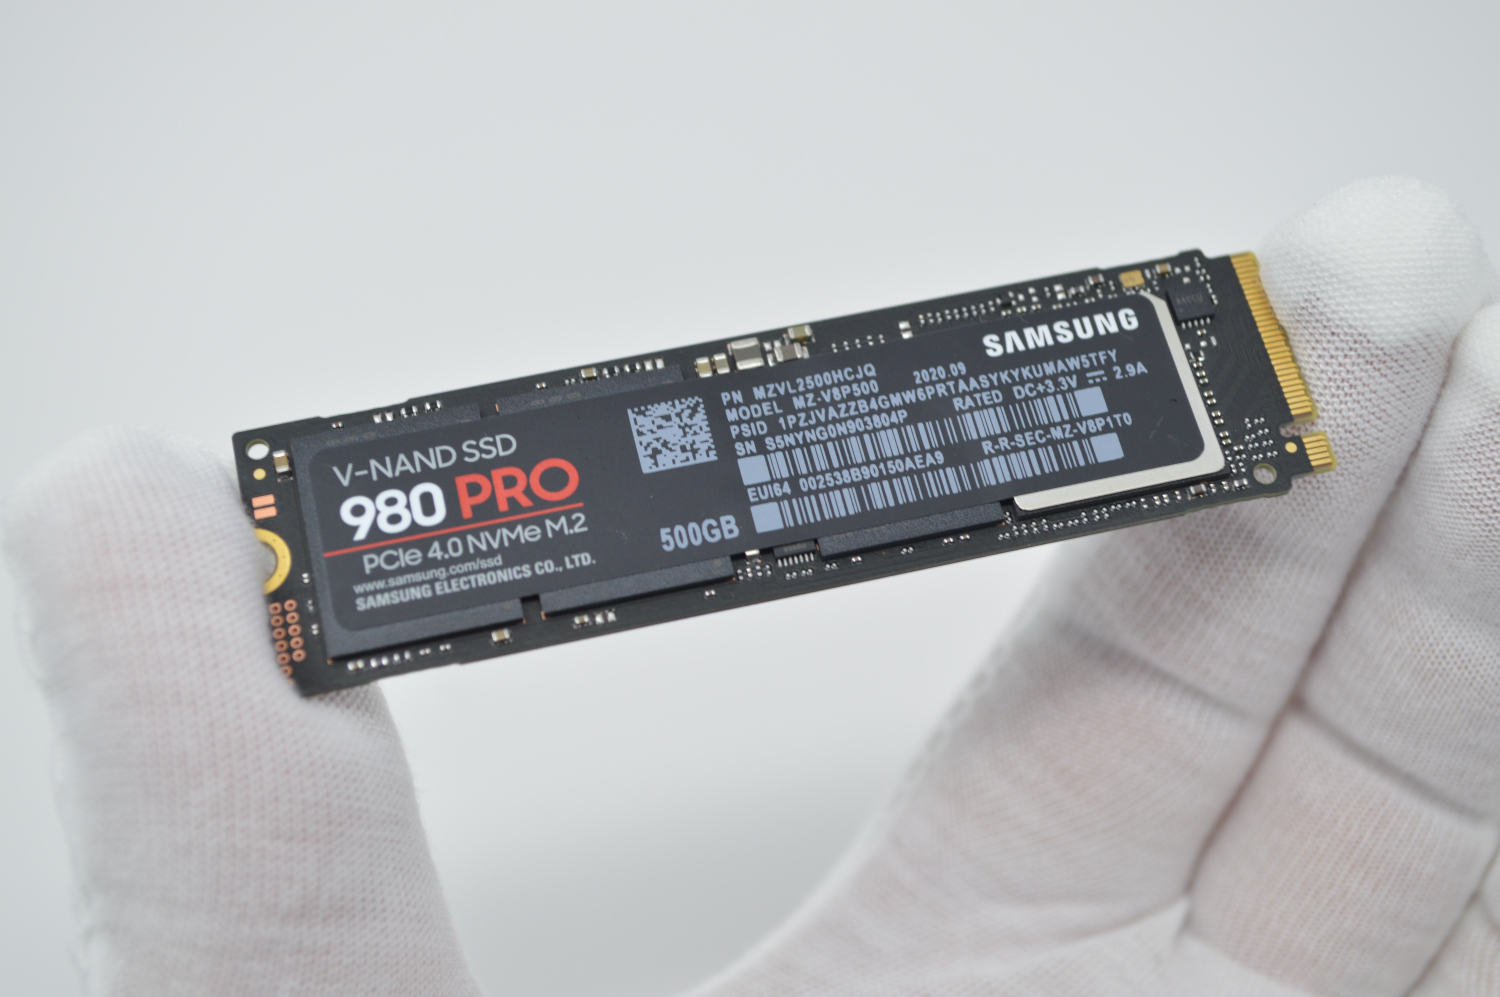 Rullesten Duplikering forbundet Samsung 980 Pro 500GB PCIe Gen4 NVMe SSD Benchmarks Review